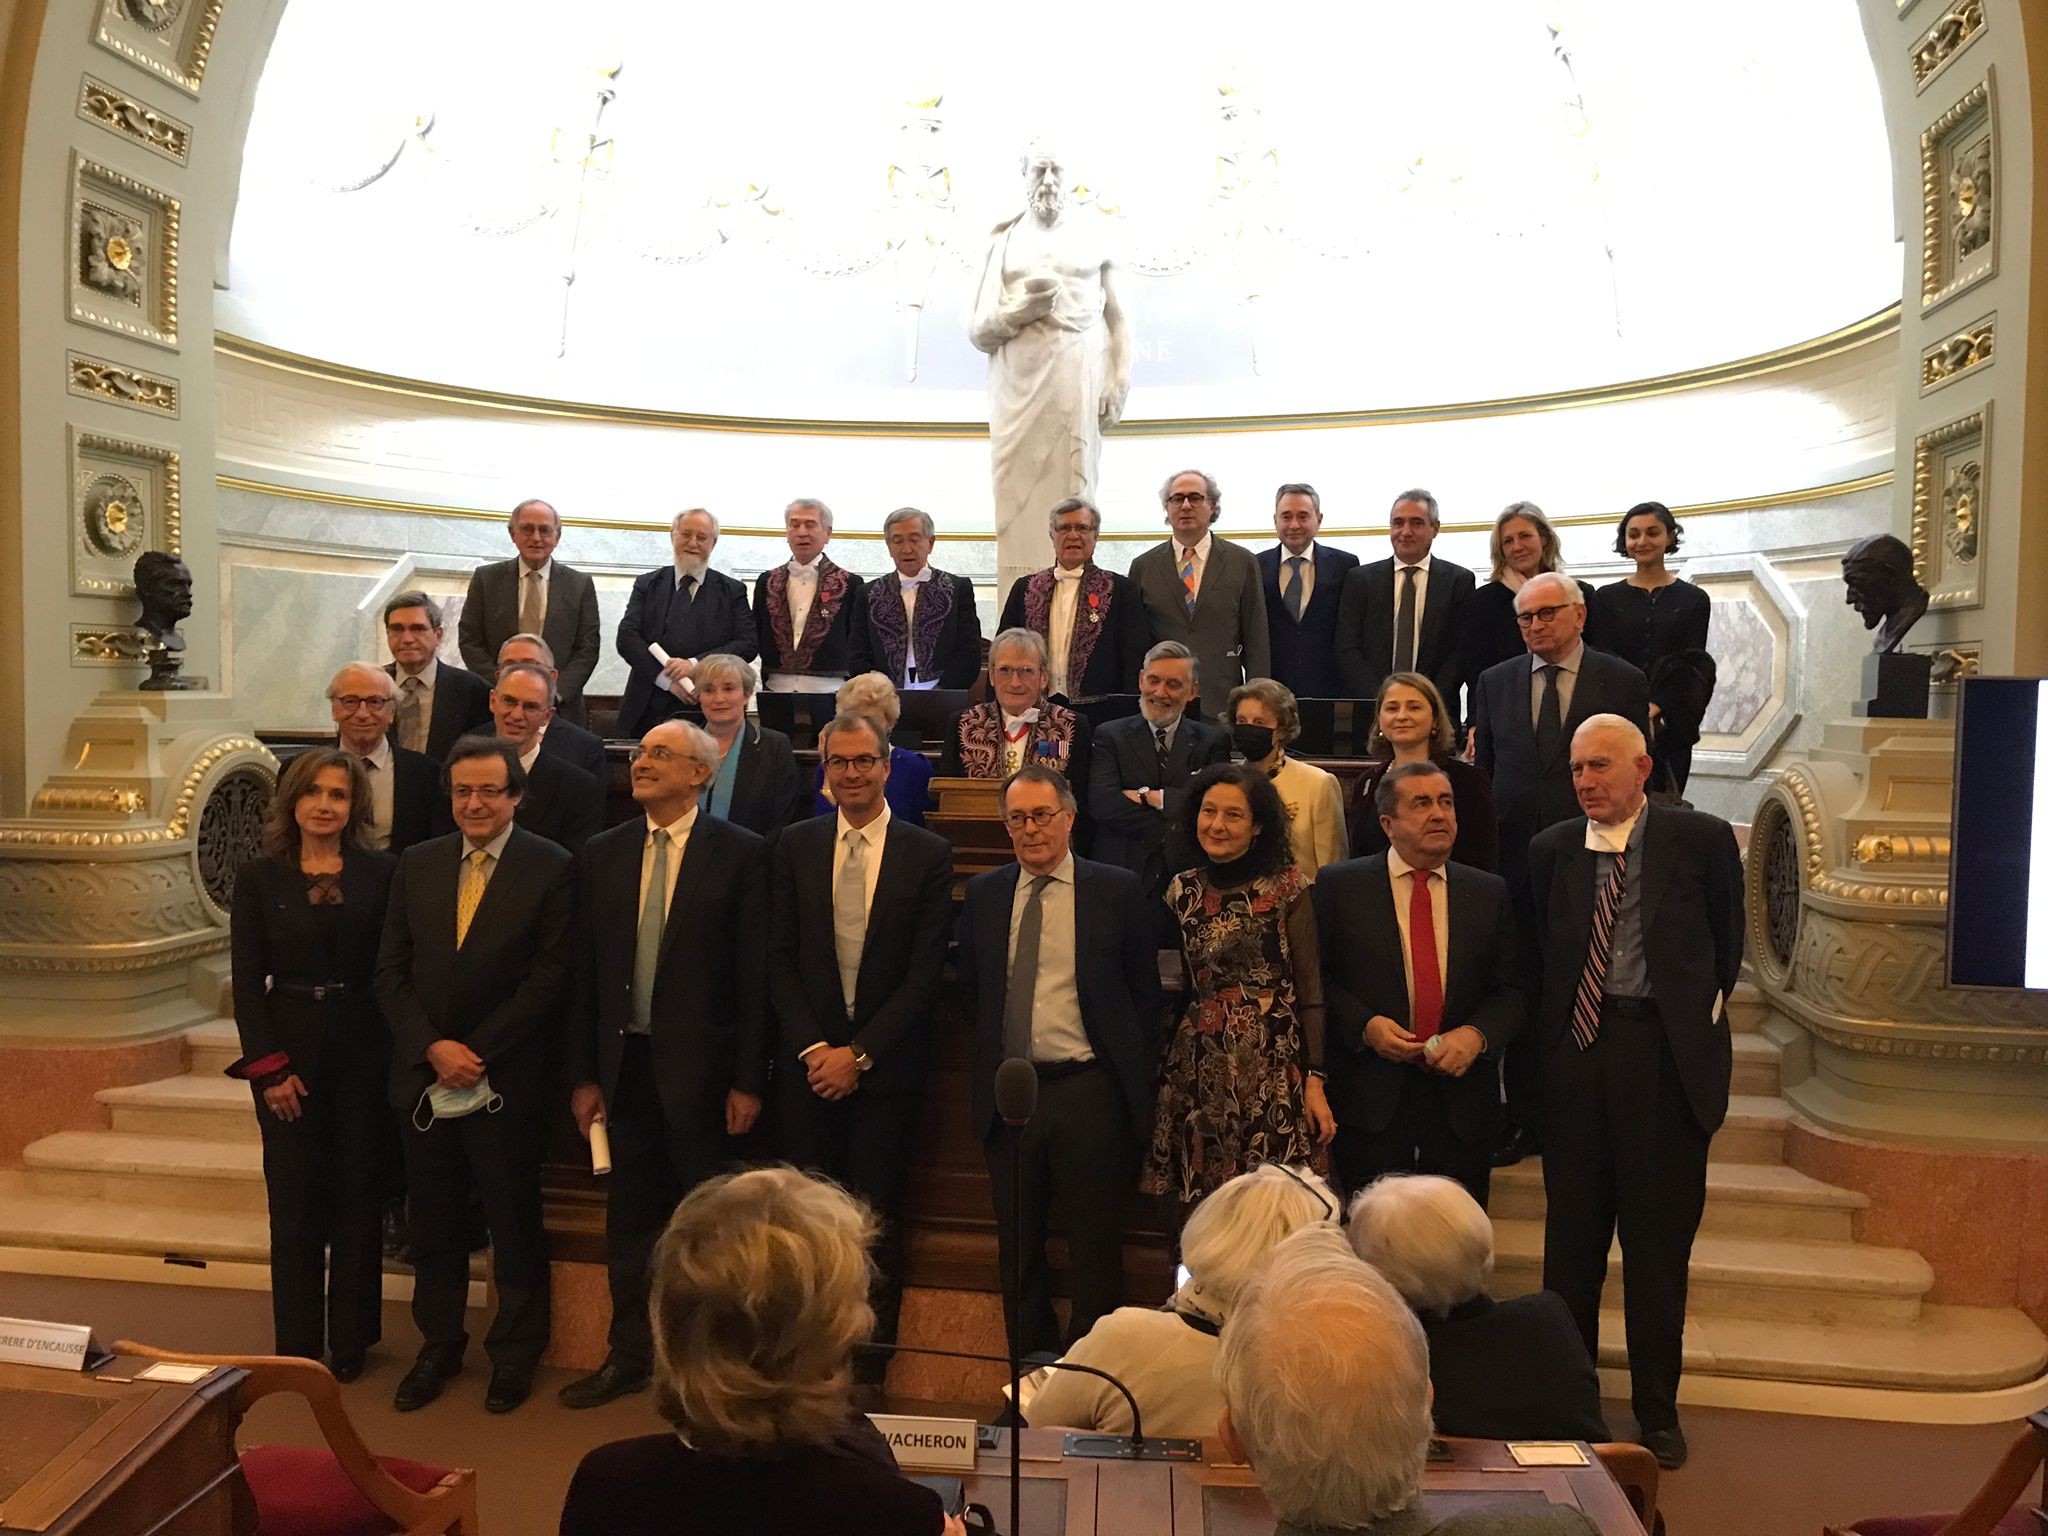 5 Sedinţa solemnă a Academiei Naţionale de Medicină a Franţei pentru primirea noilor membri corespondenţi